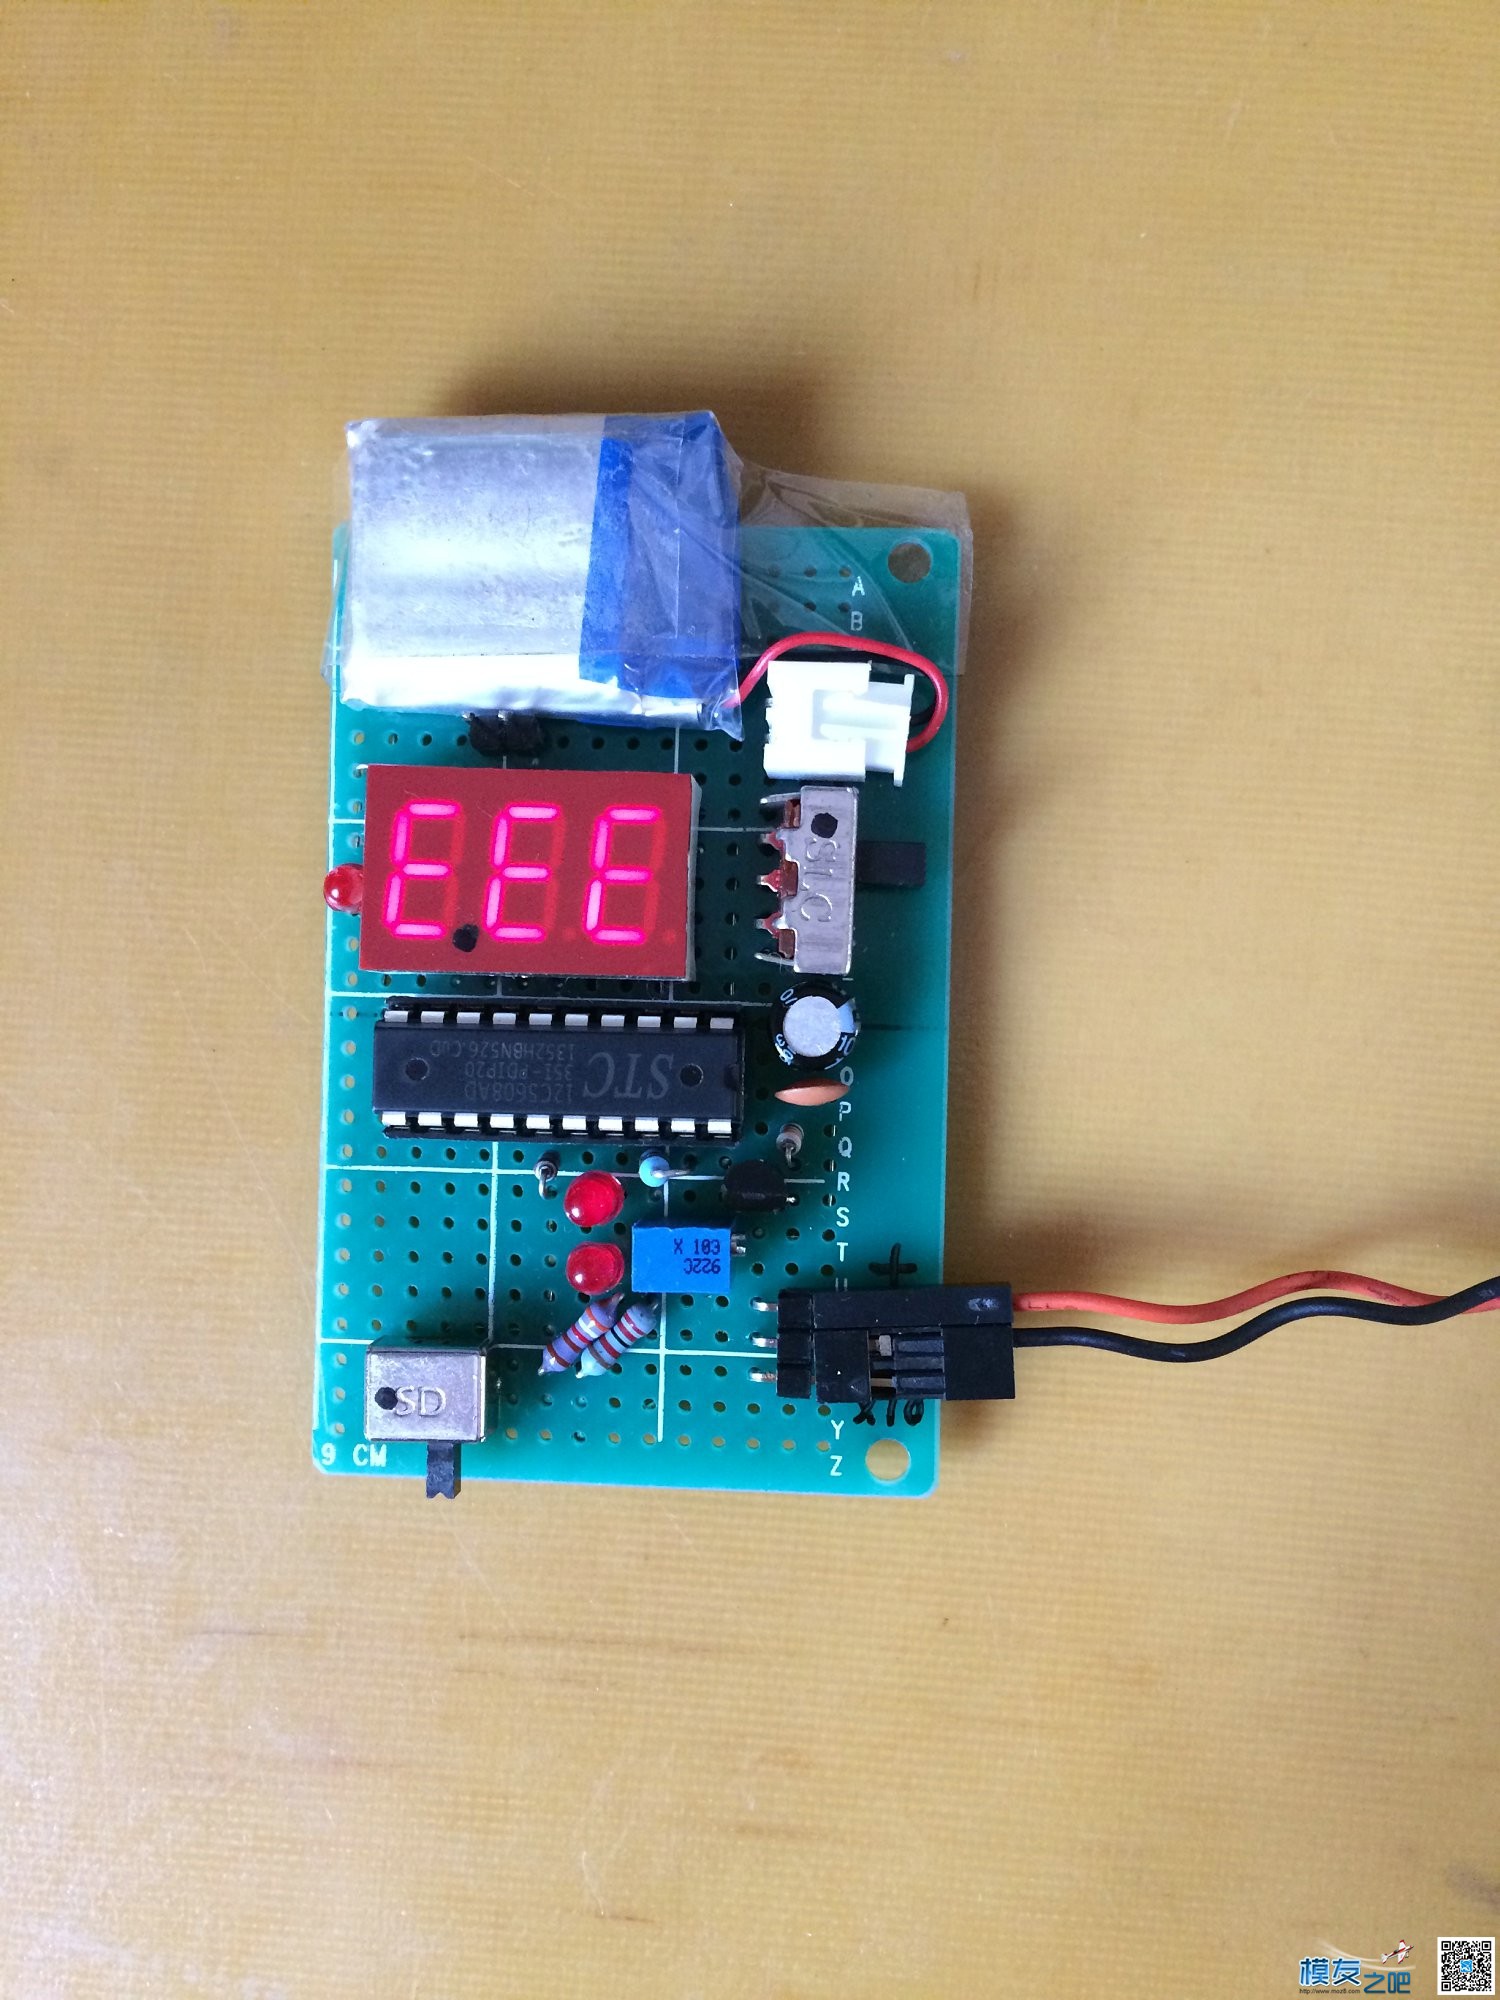 自制正负量程电压表,问题及解决。 电压表 作者:长寿烙铁 1497 